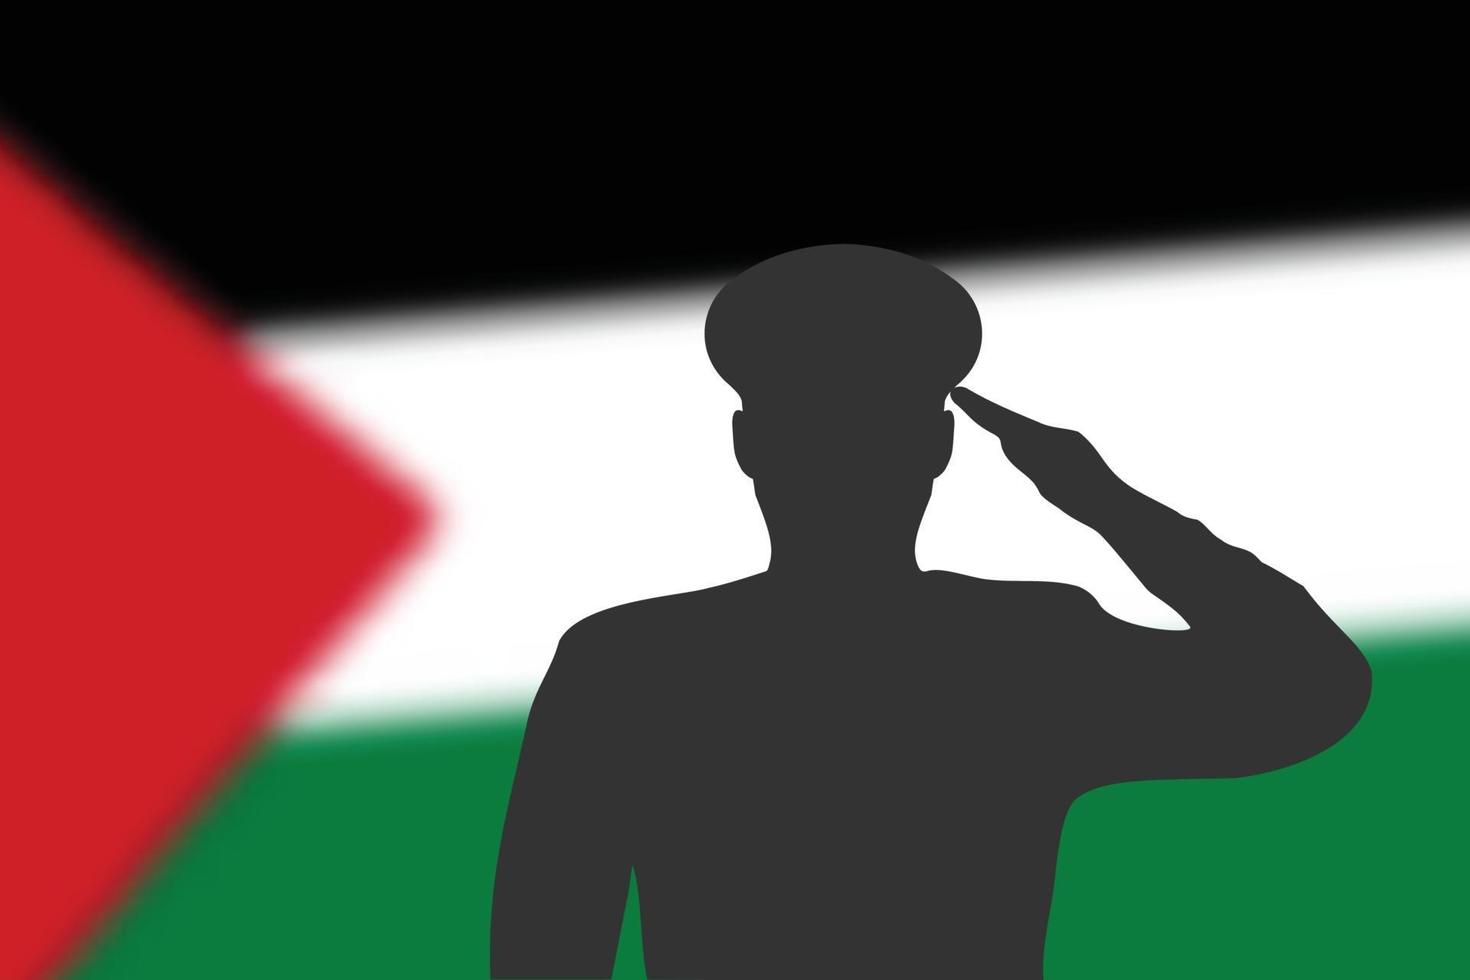 Lötsilhouette auf unscharfem Hintergrund mit Palästina-Flagge. vektor